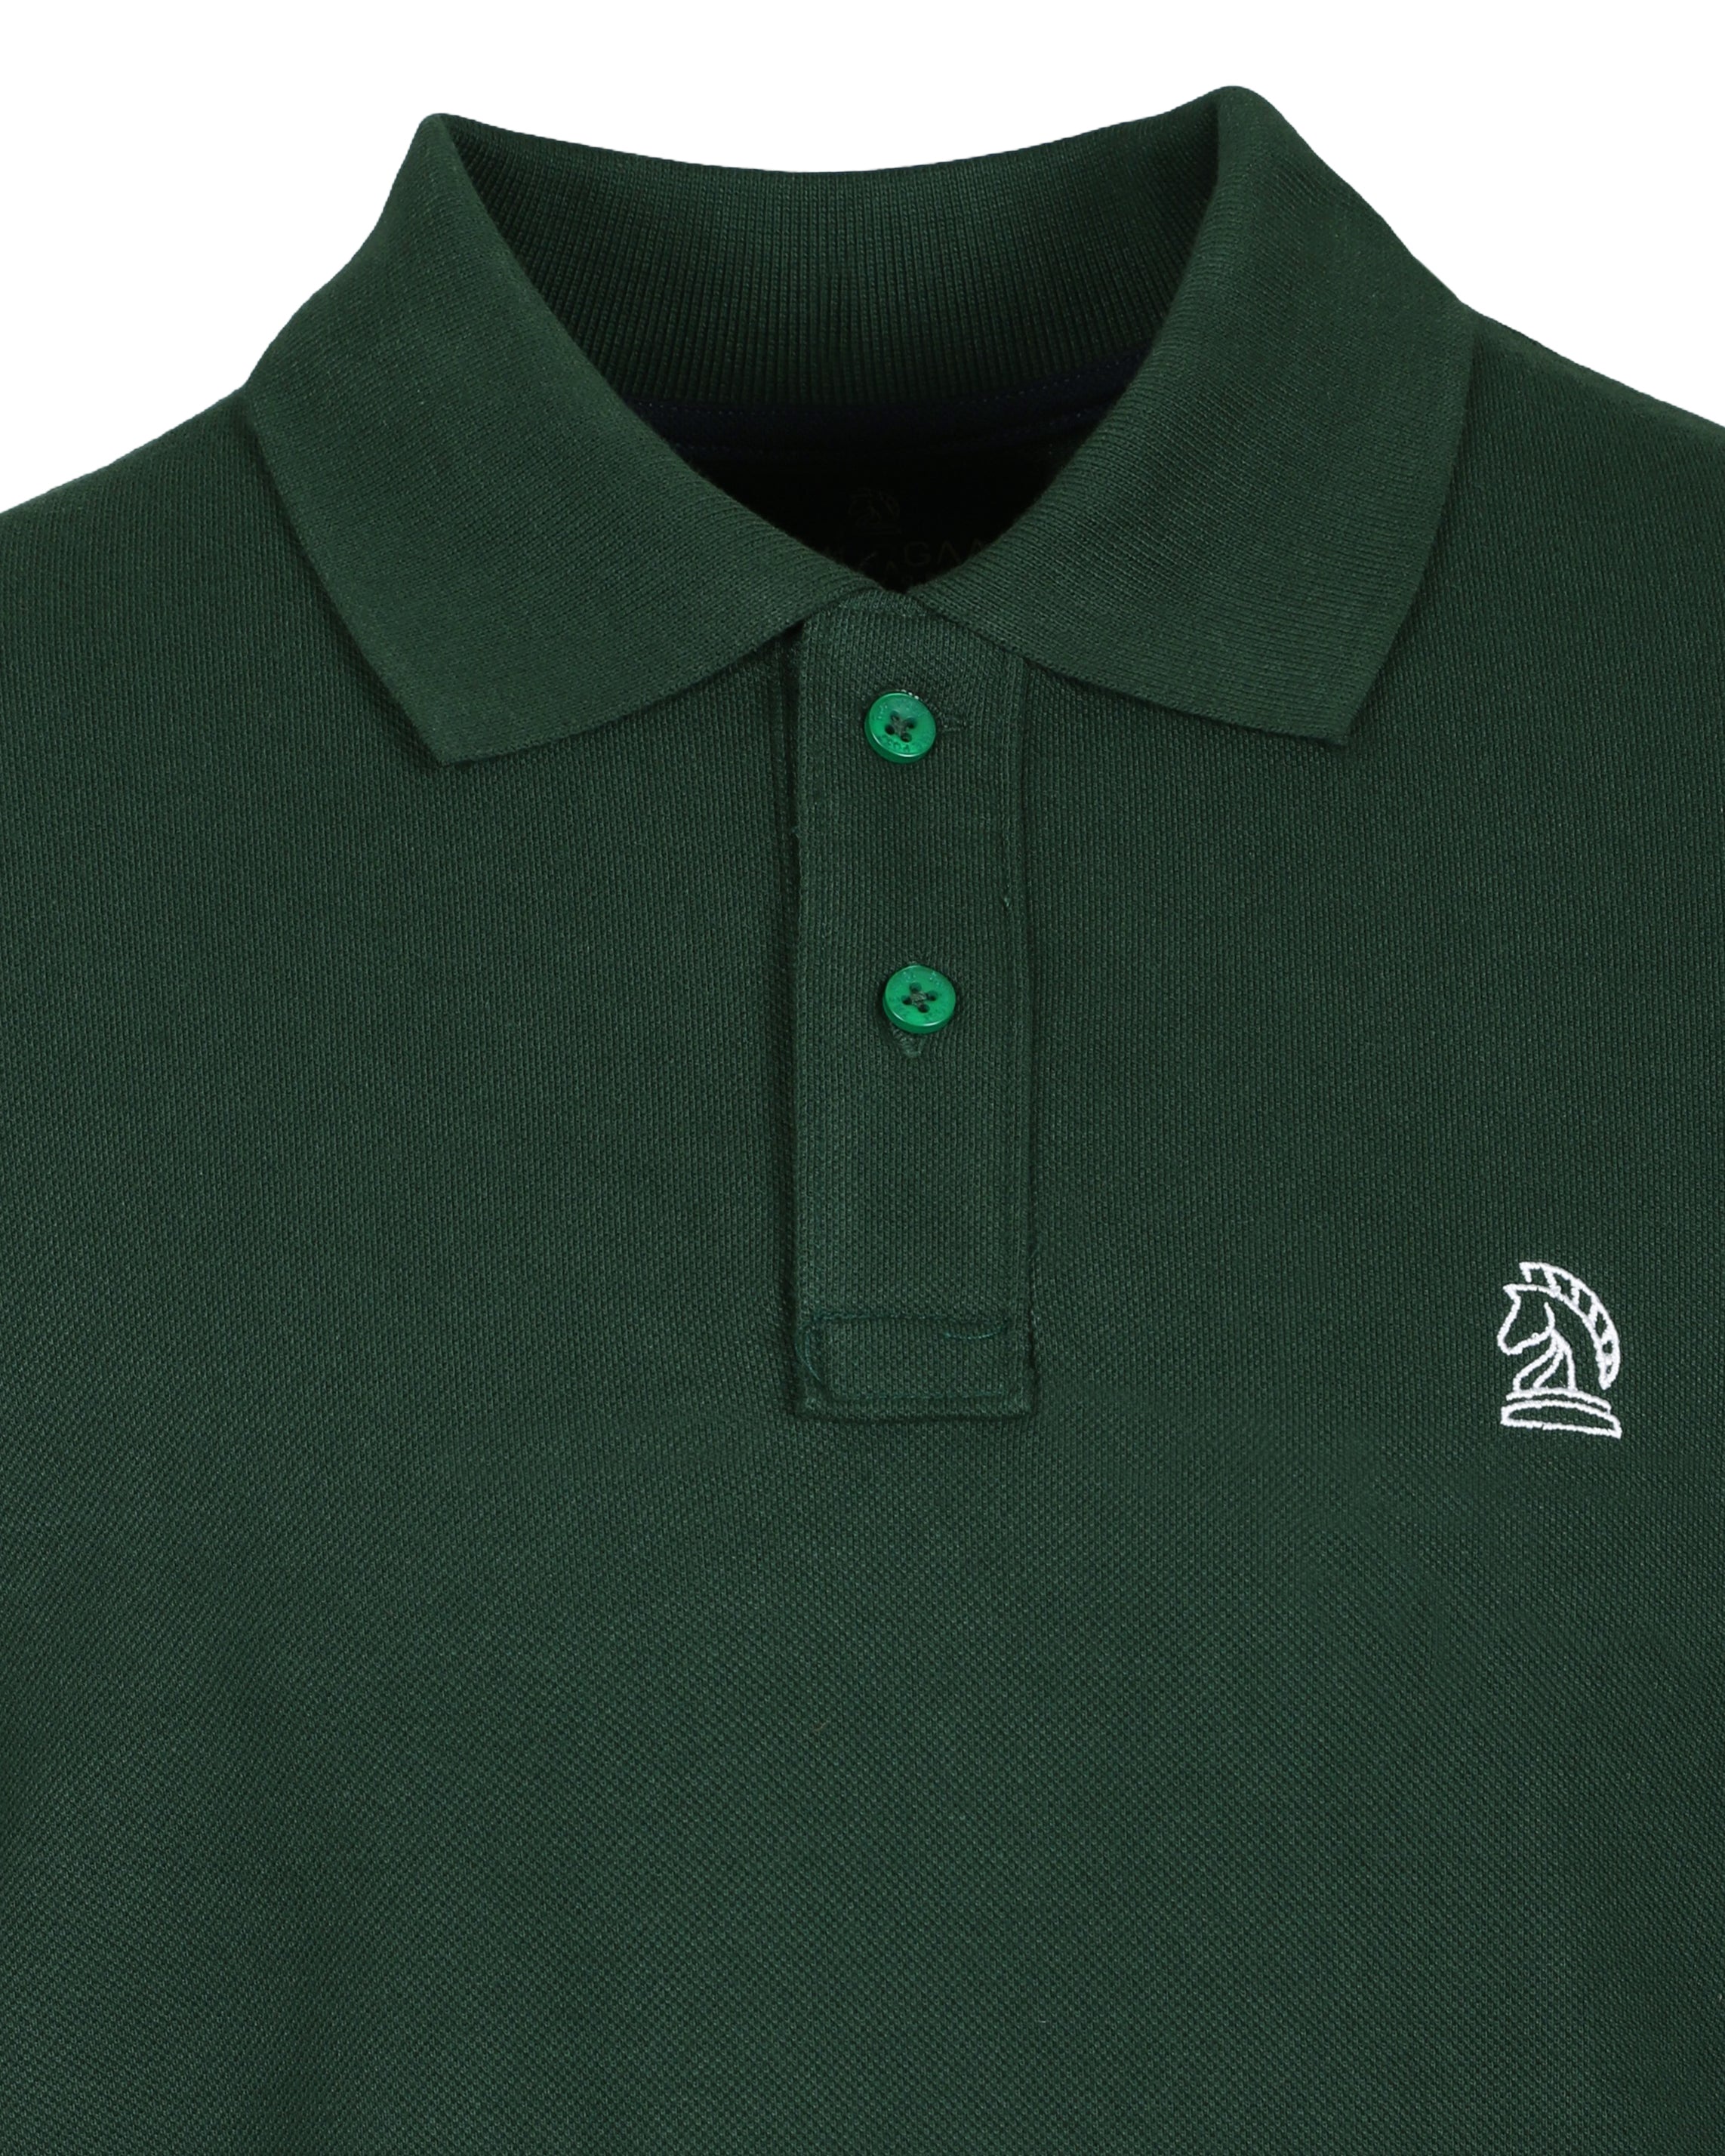 Green Color Premium Cotton T-Shirt